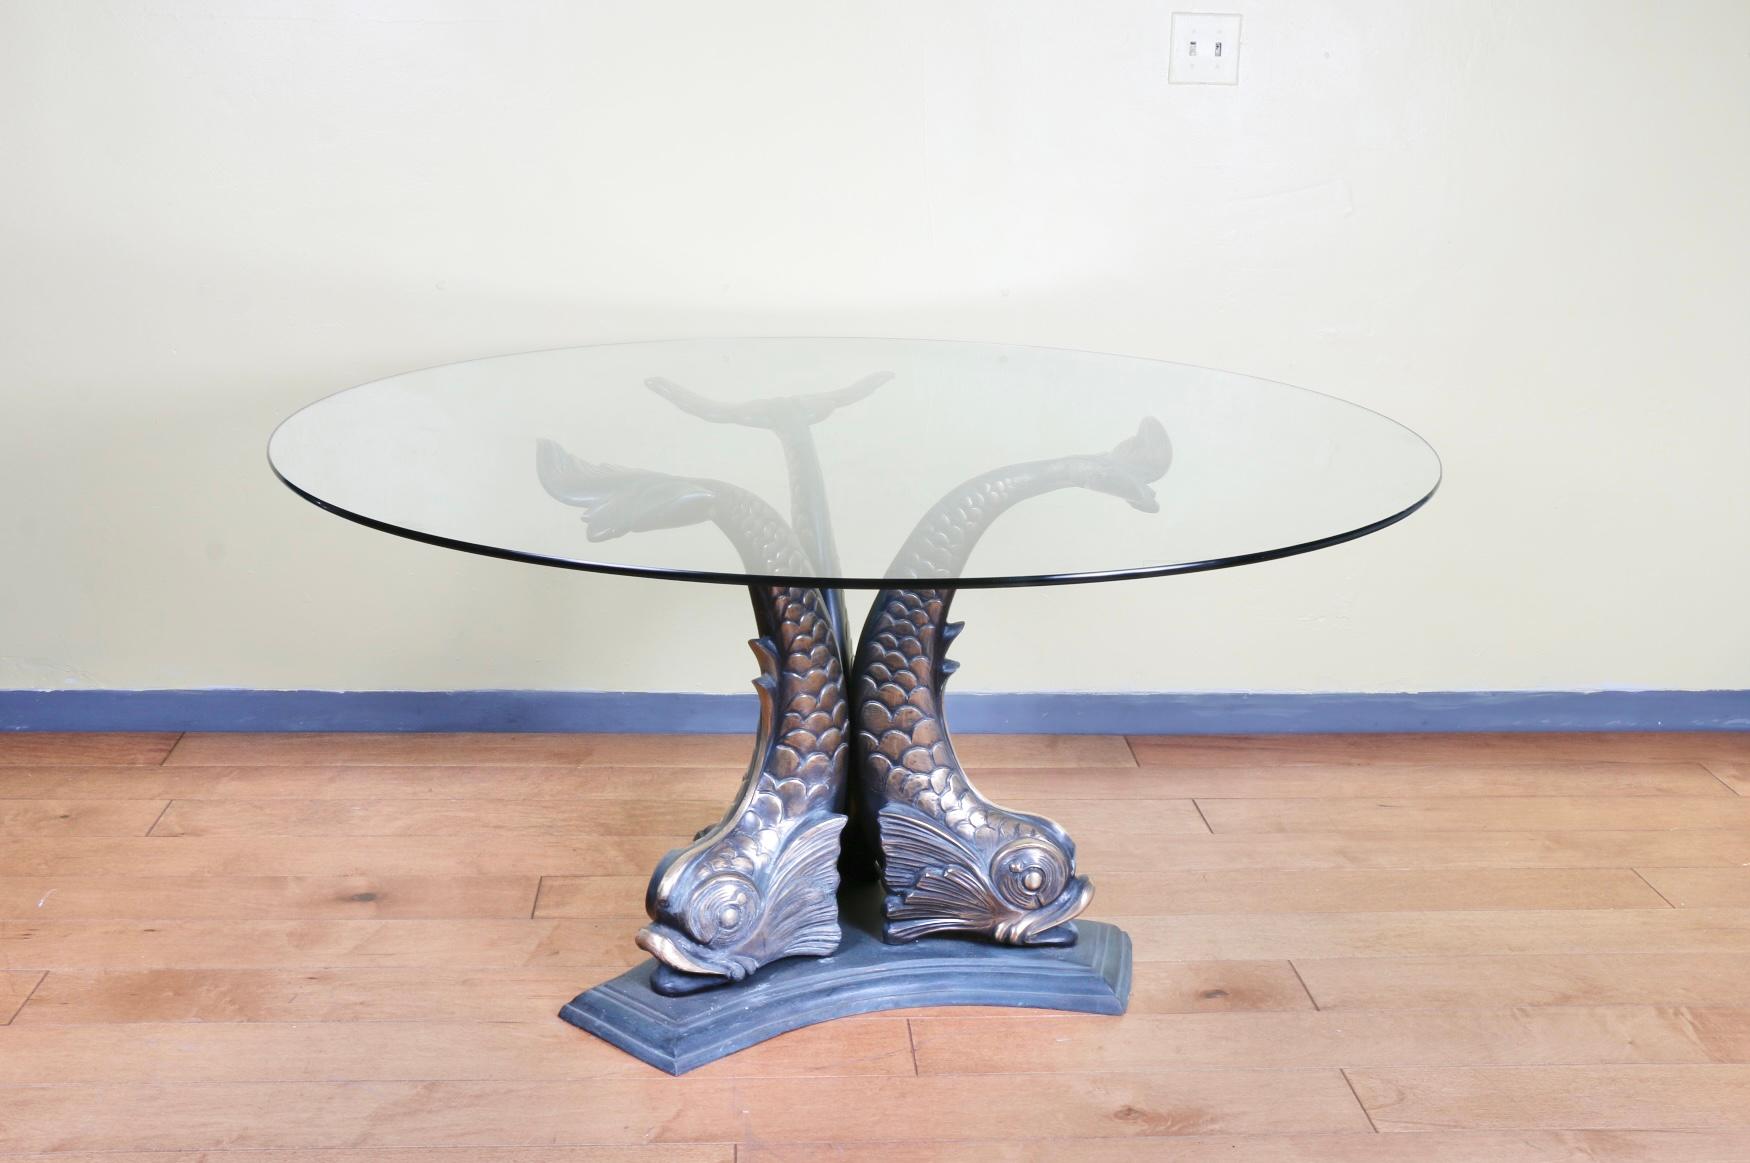 Wunderschöne schwere und massive Bronze Koi Fisch Mitte Tisch Basis mit runden Glasplatte. Sehr elegant und großartig für jeden Hauseingang. Keine Schäden oder gebrochene Teile.